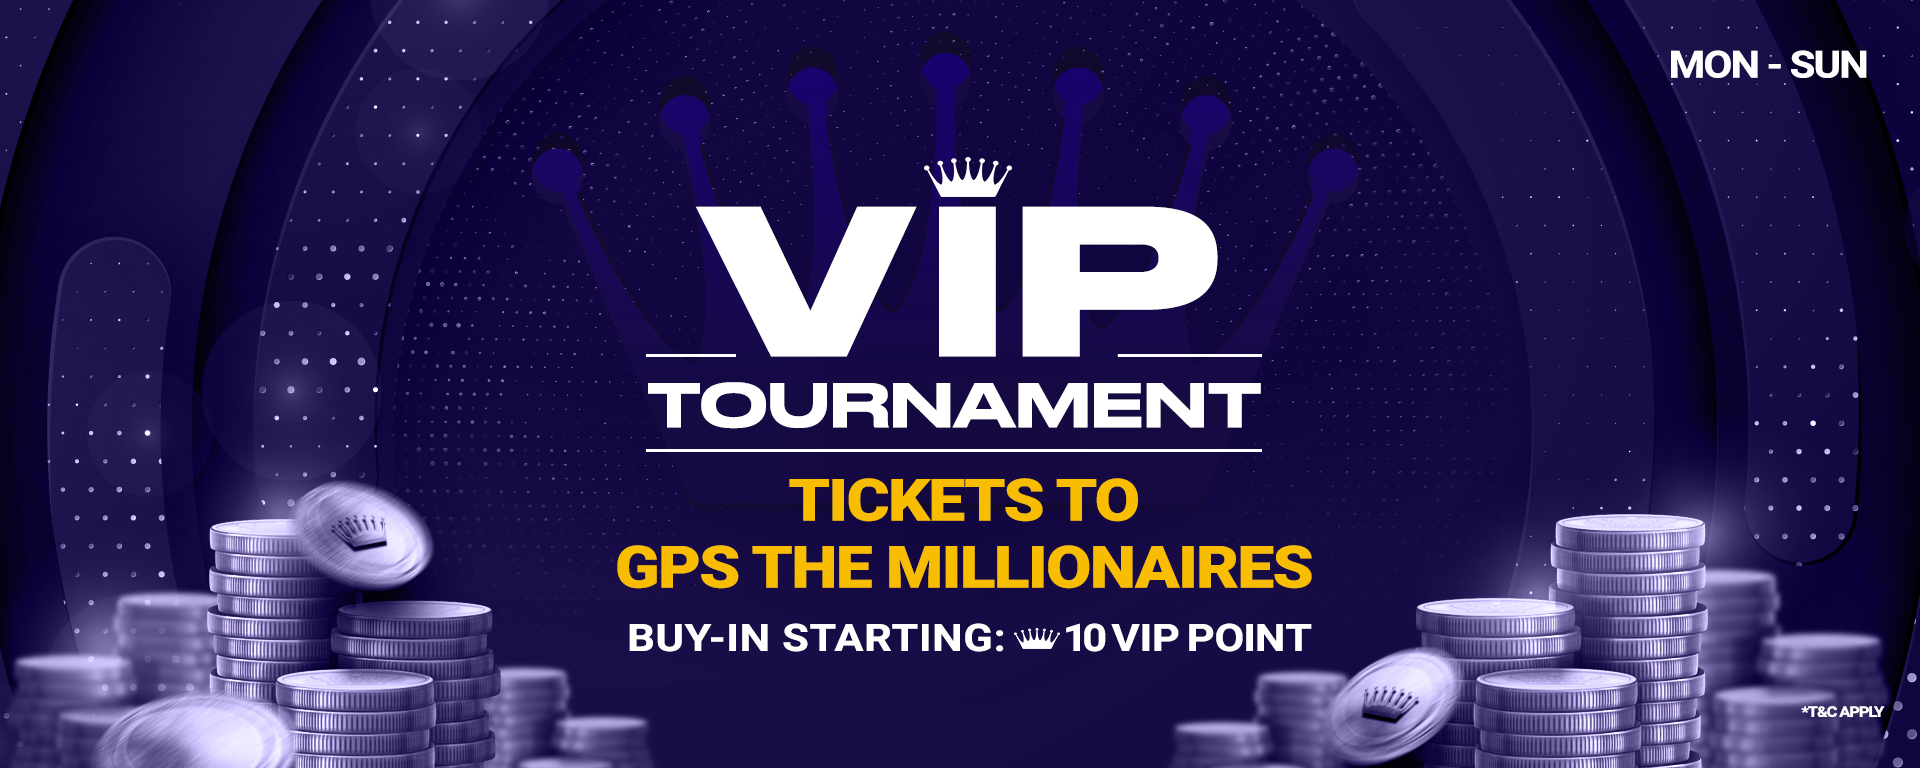 VIP Tournament